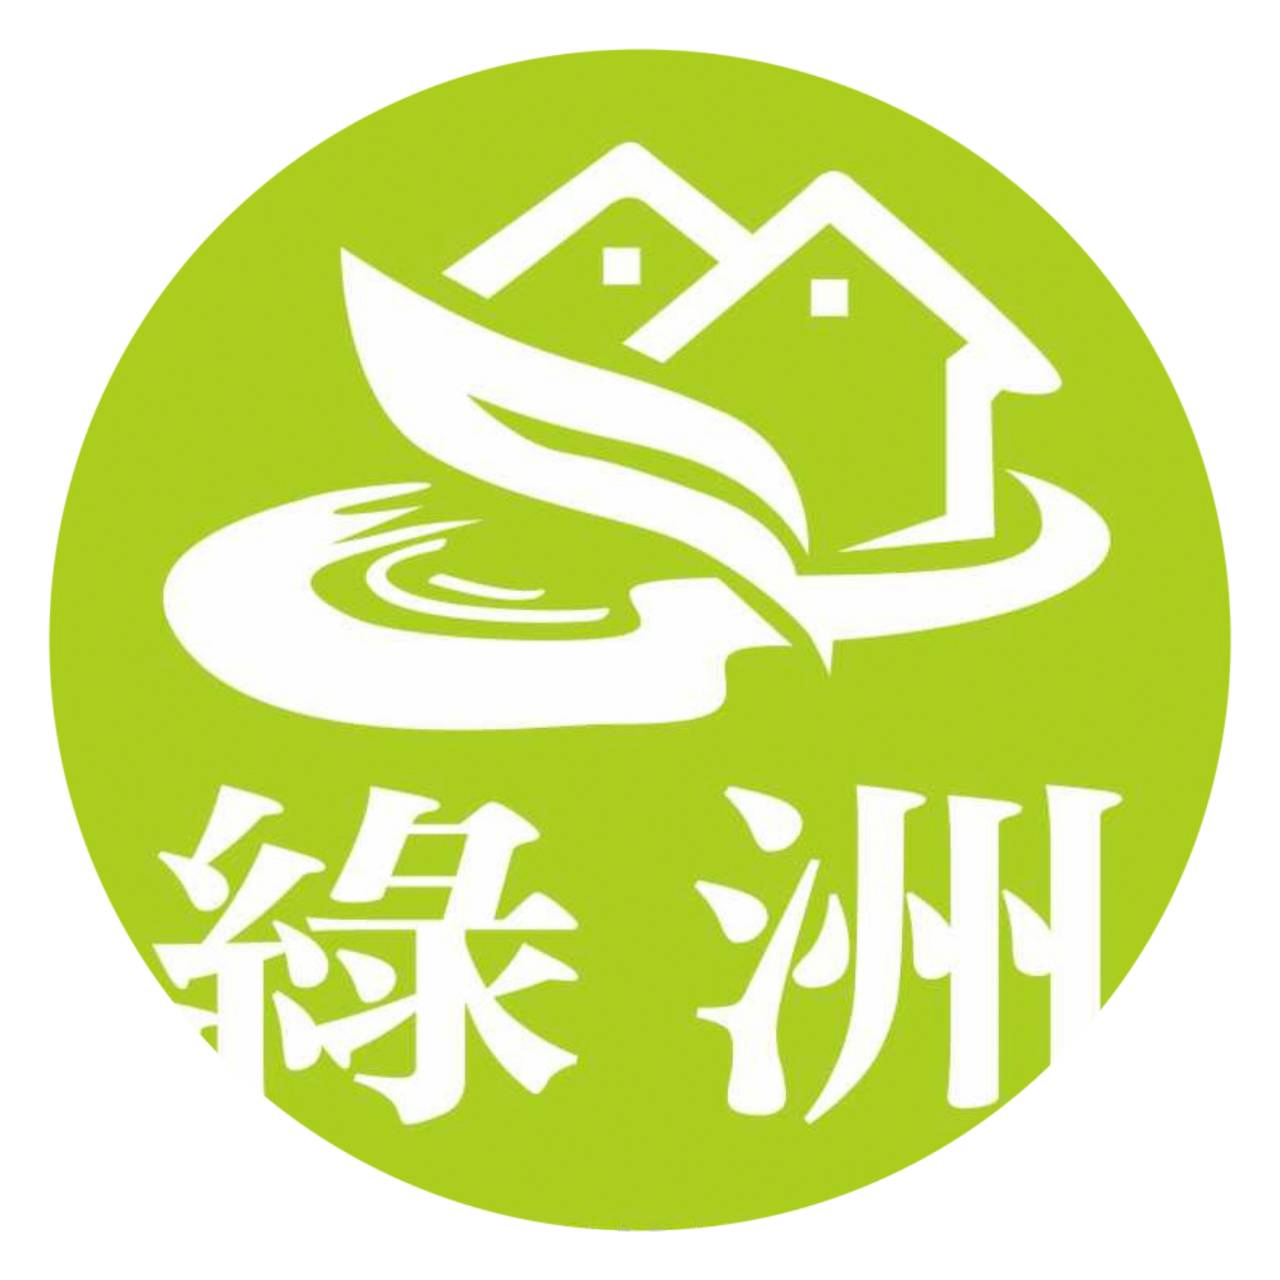 綠洲鑿井工程行Logo